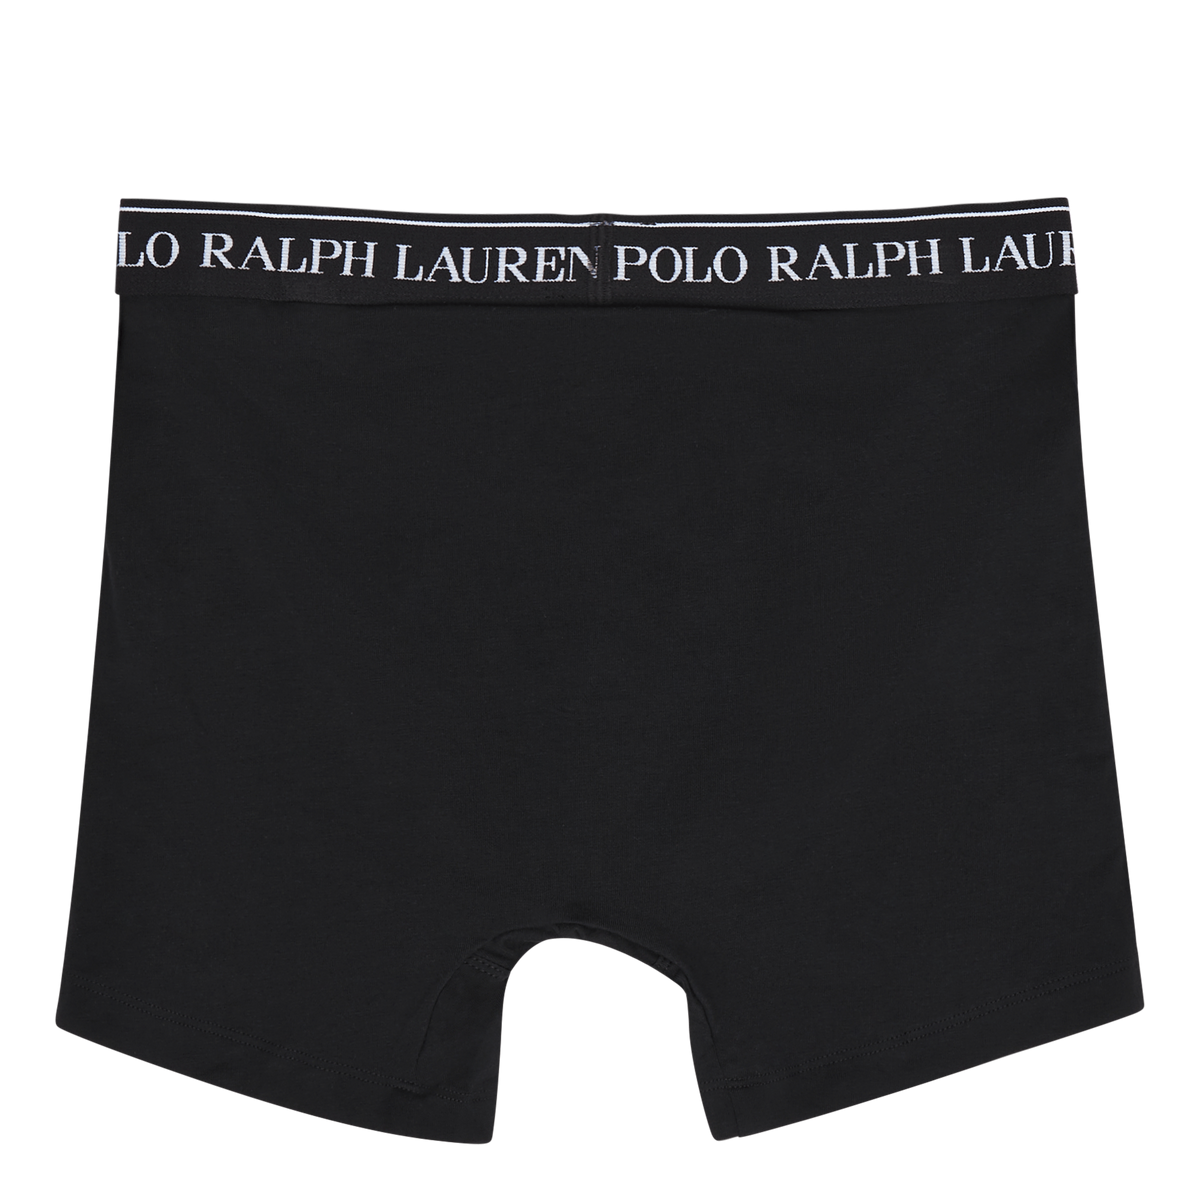 Polo Ralph Lauren 3pk Boxer Brief Polo Blk/polo Blk/polo Blk